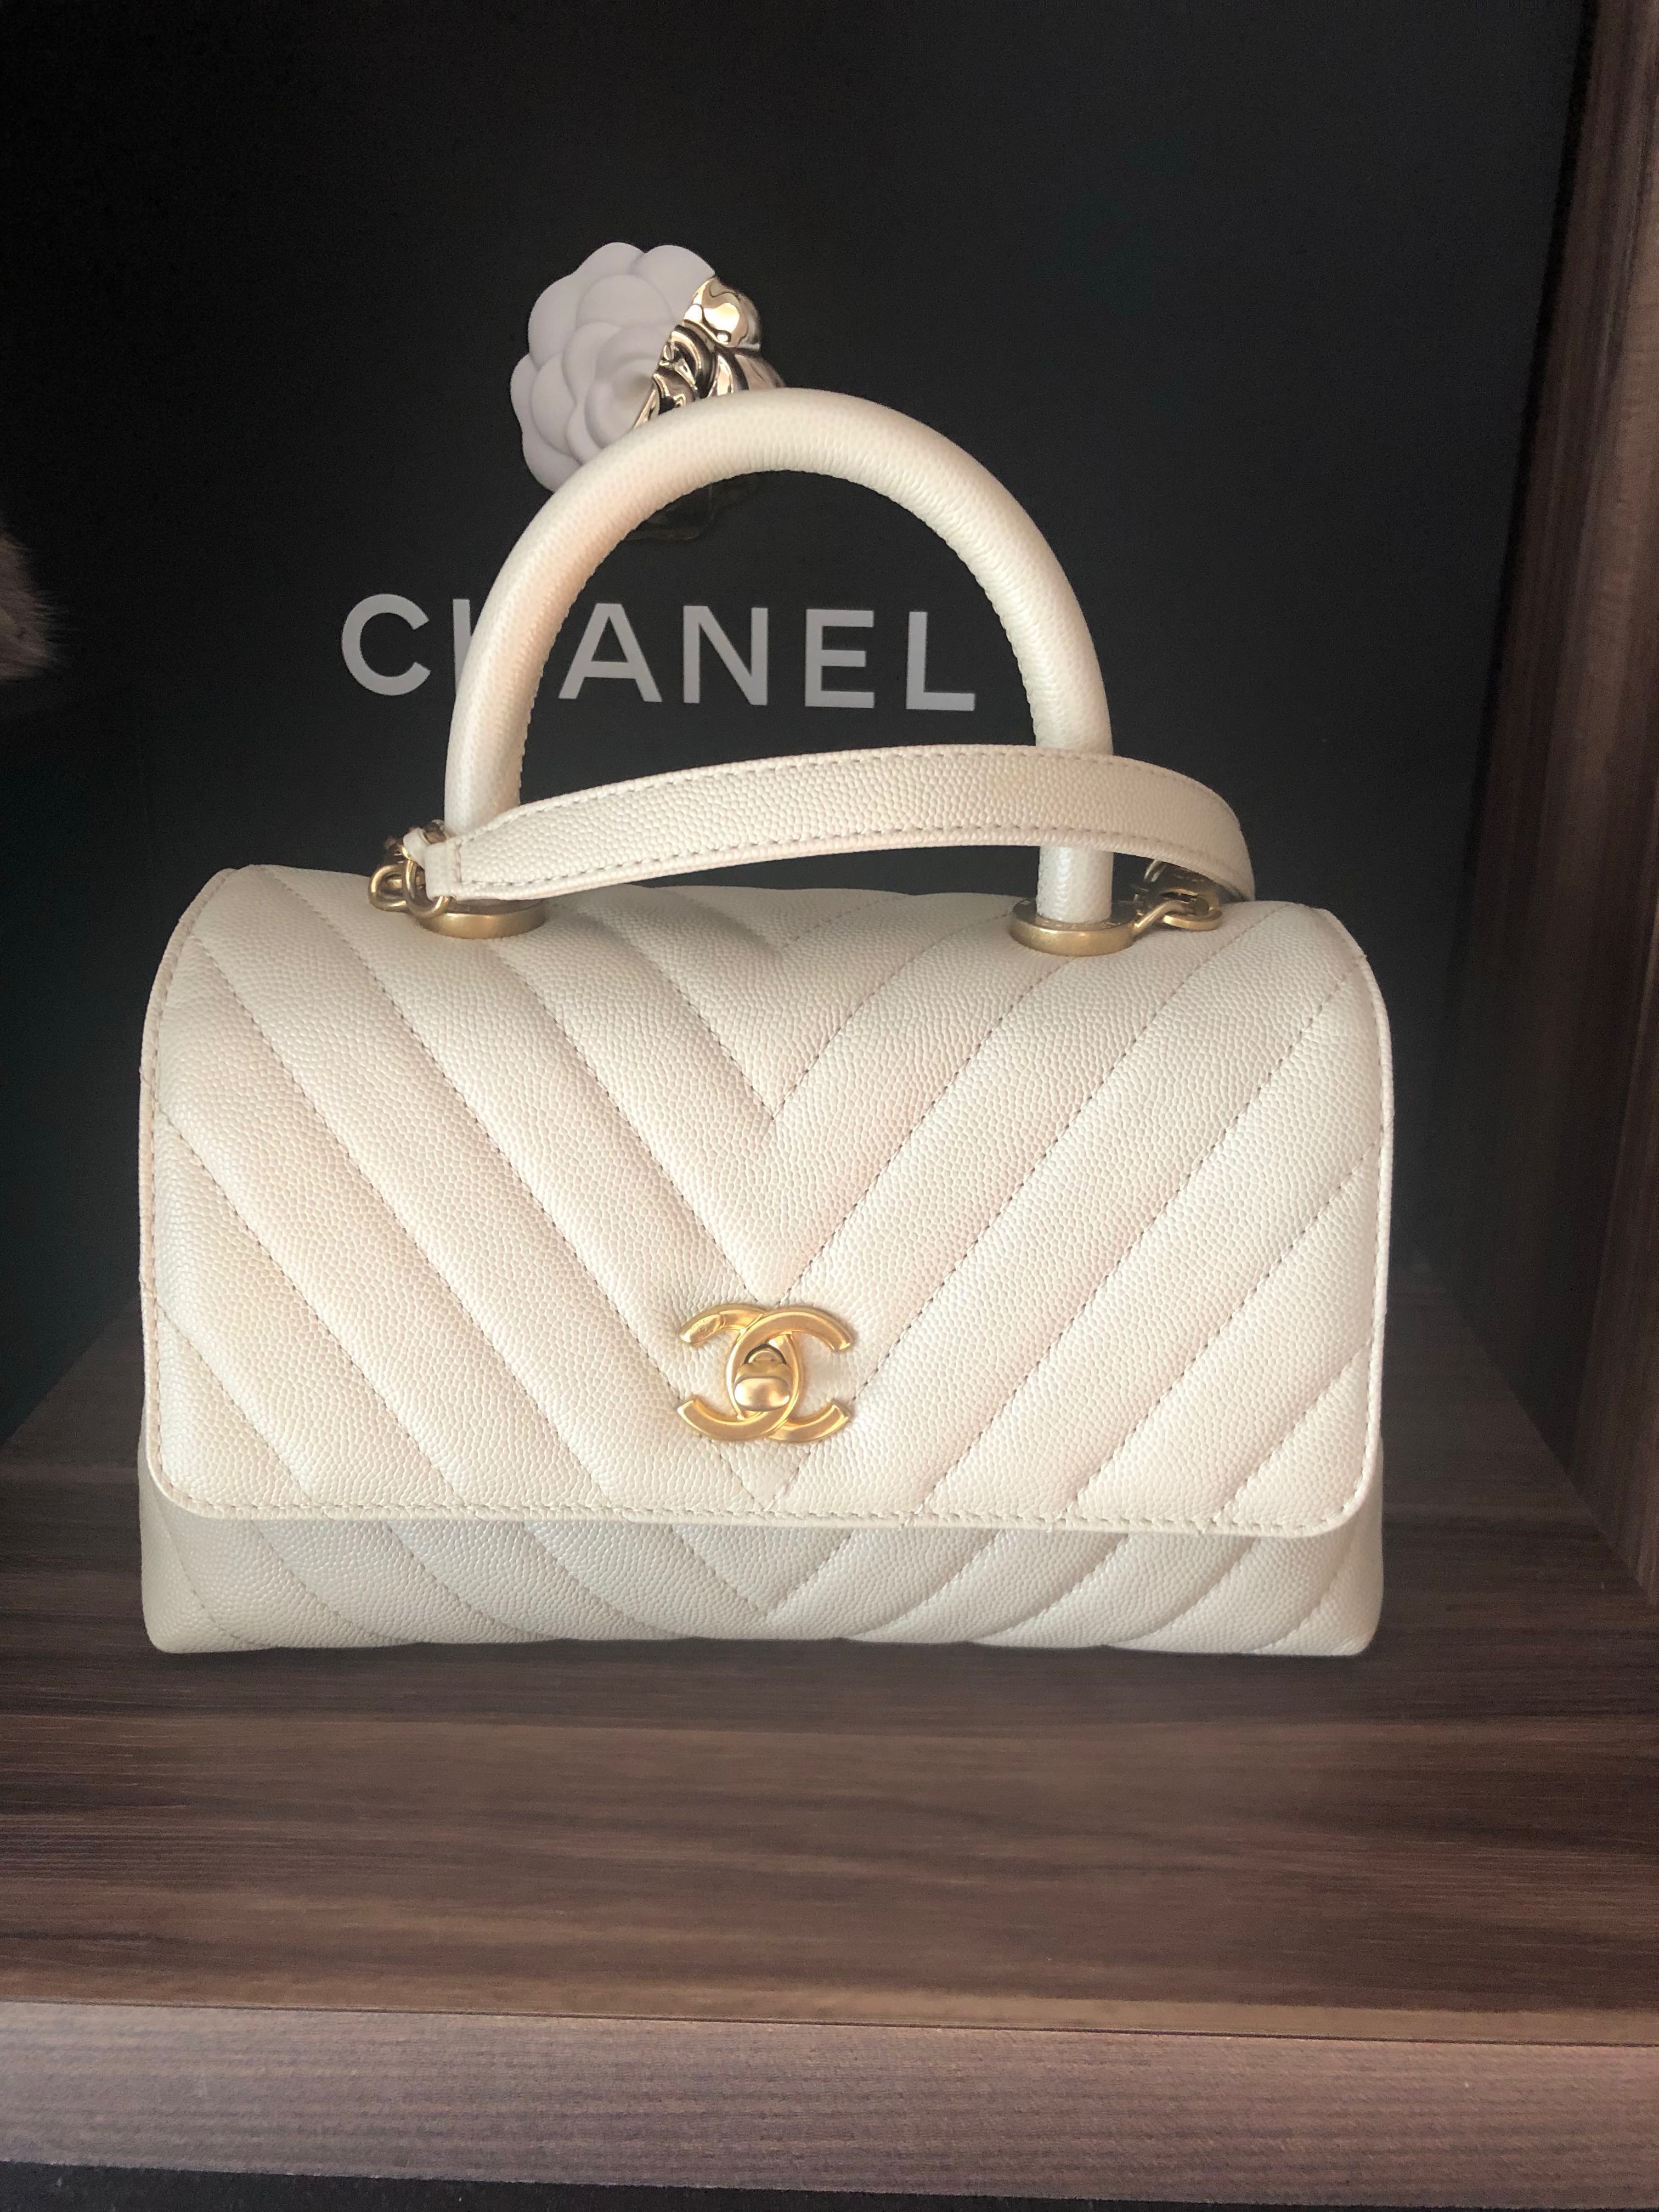 Túi Chanel Coco handle mini 19 cm Vip